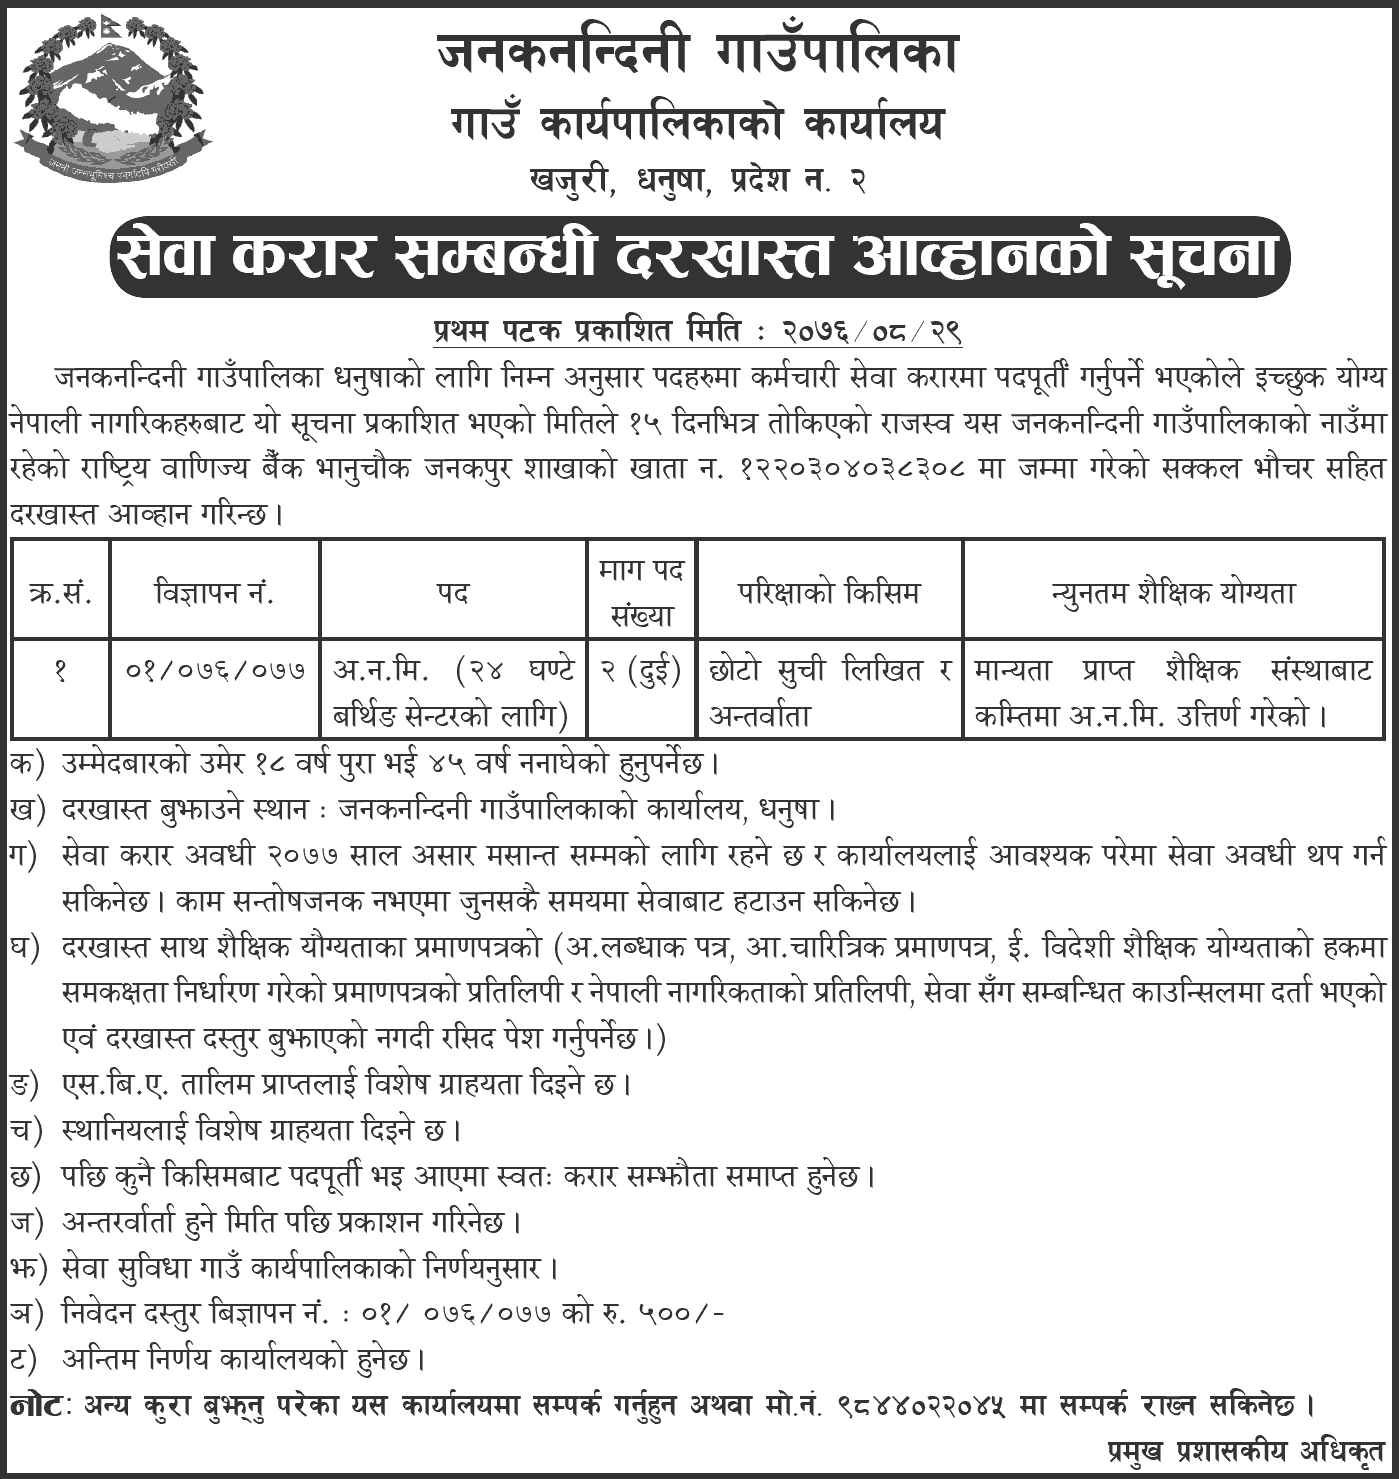 Janaknandani Rural Municipality Vacancy